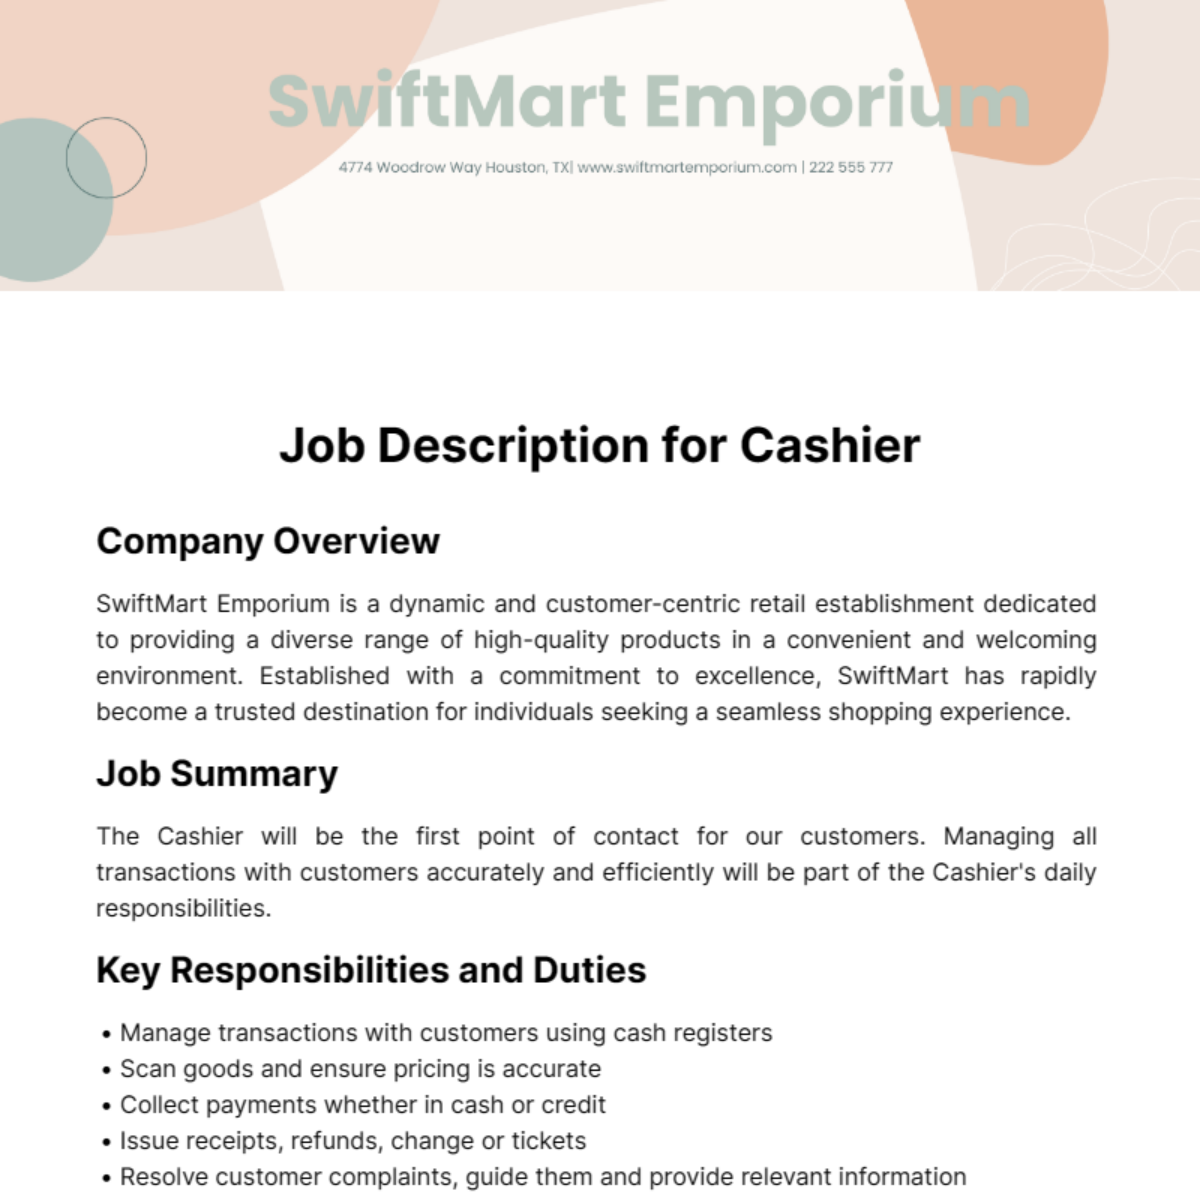 Job Description for Cashier Template